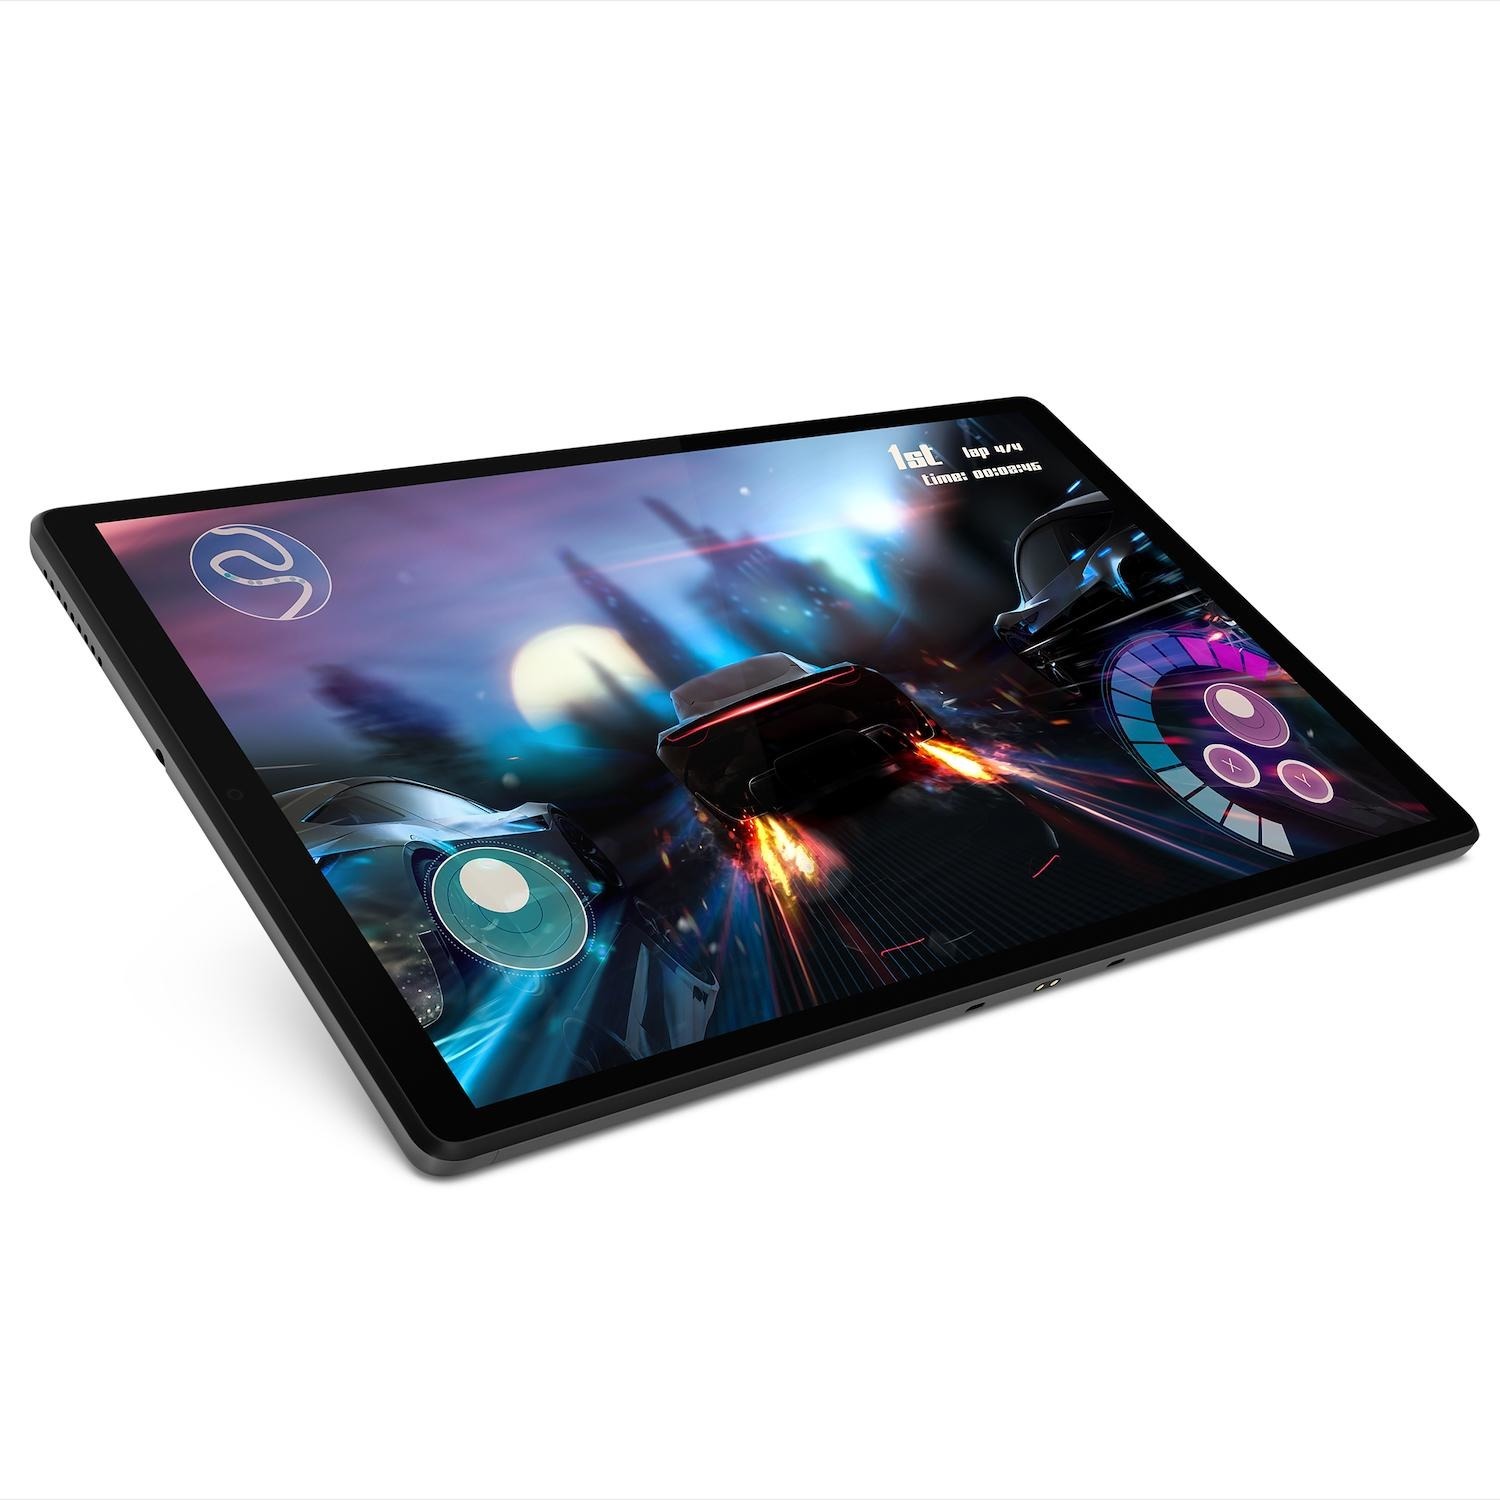 Immagine per Tablet Lenovo Ideatab M10 Plus LTE da DIMOStore